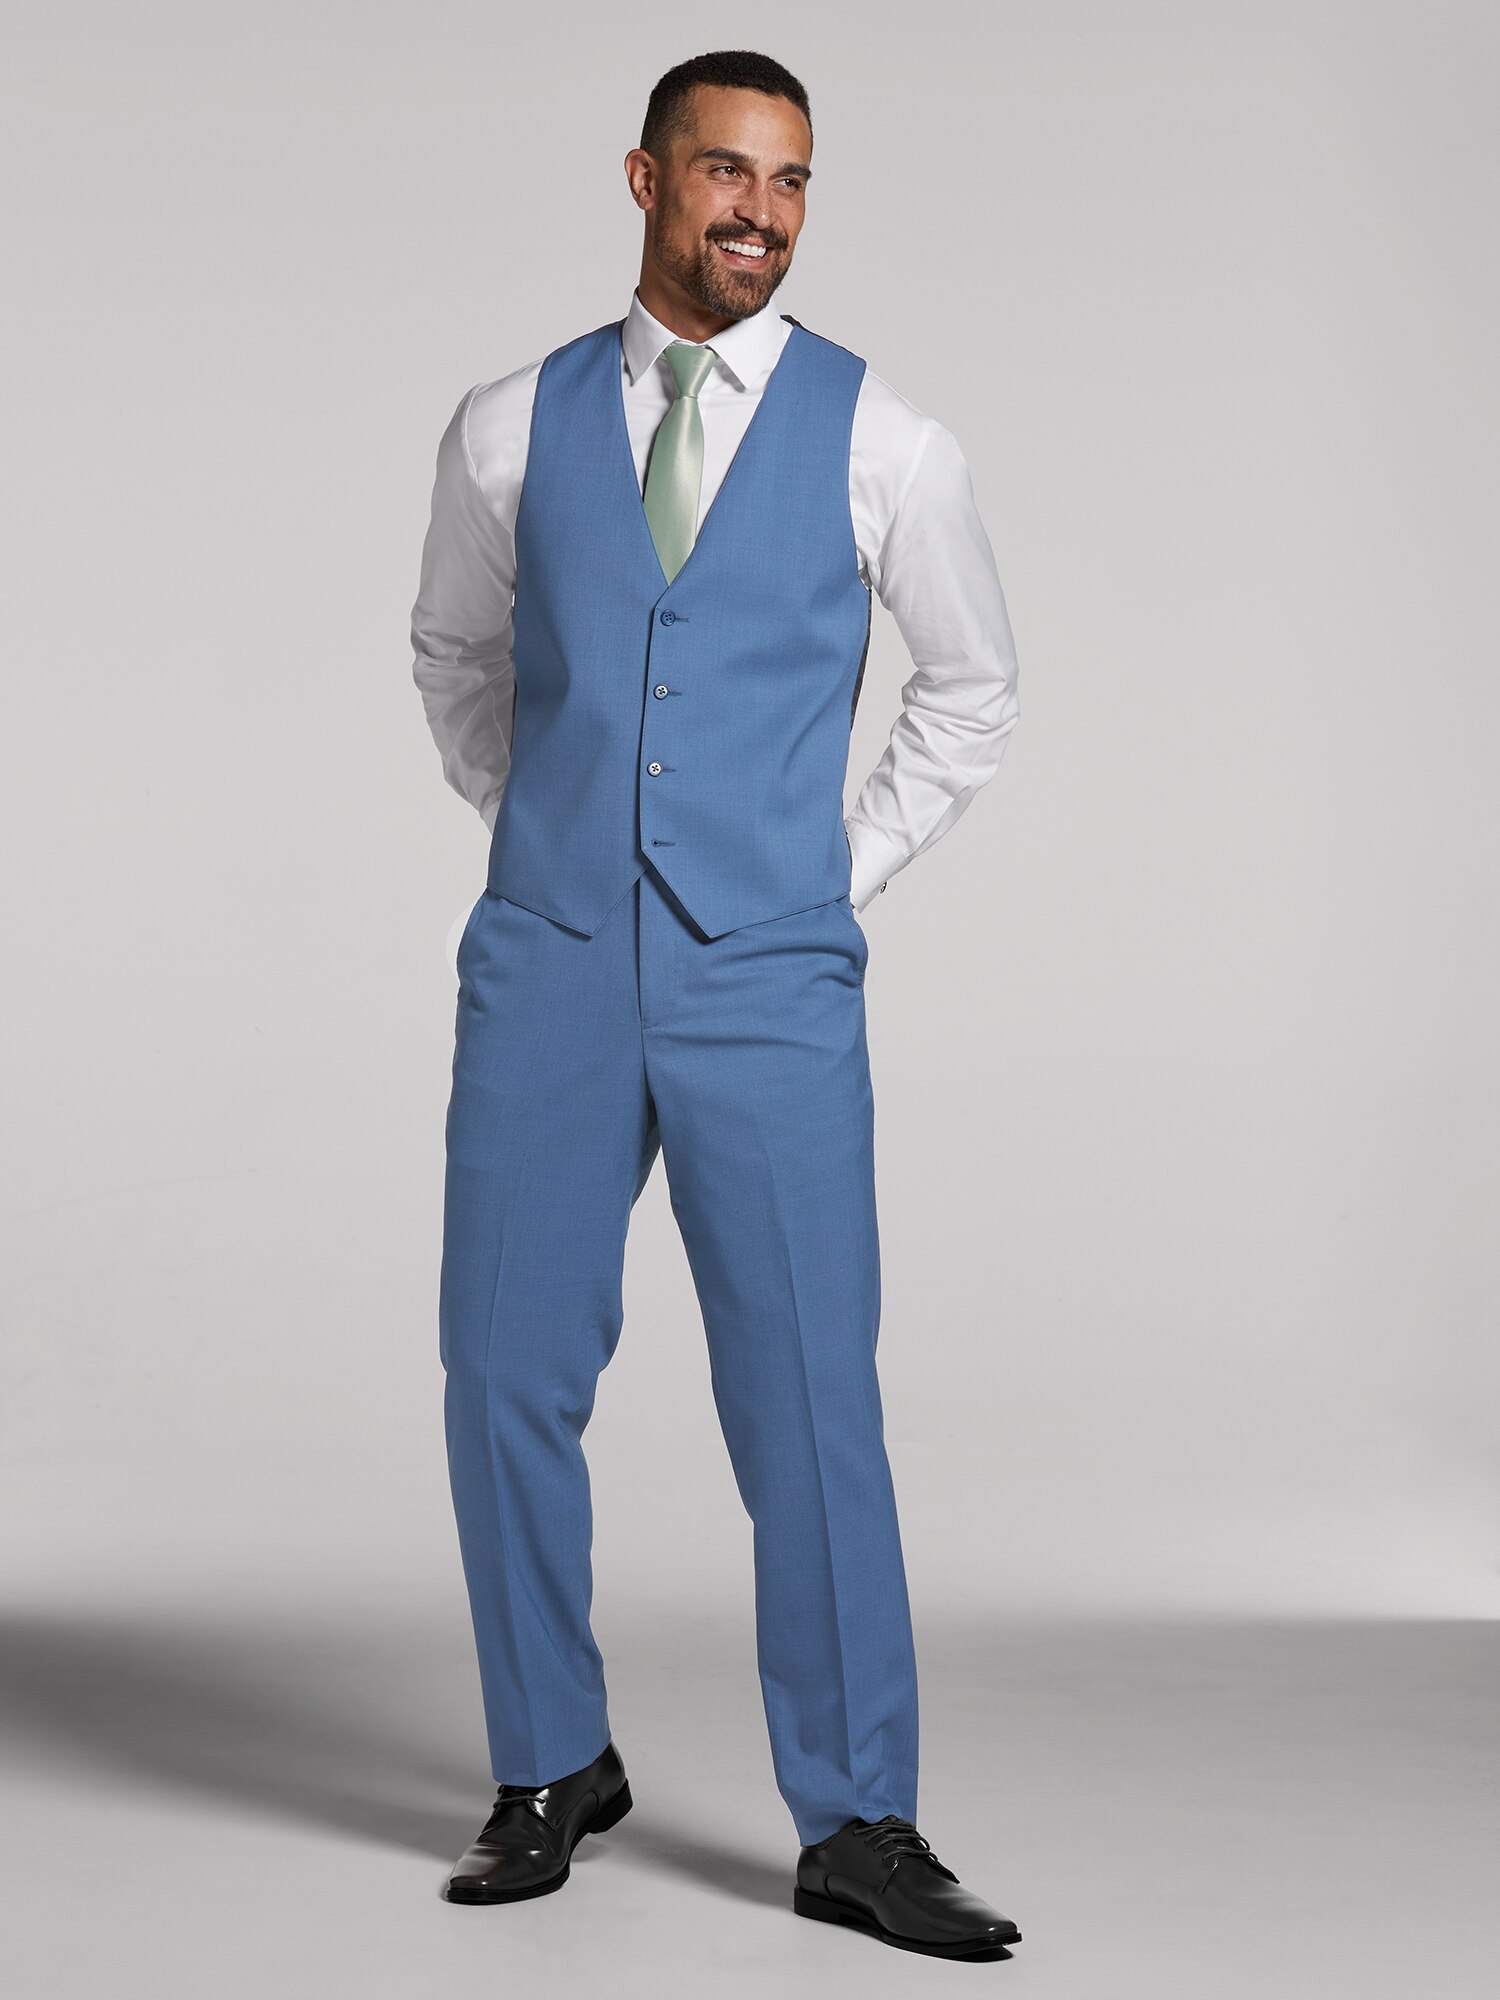 Vær venlig Bedrag afskaffet Blue Performance Wedding Suit by Calvin Klein | Suit Rental